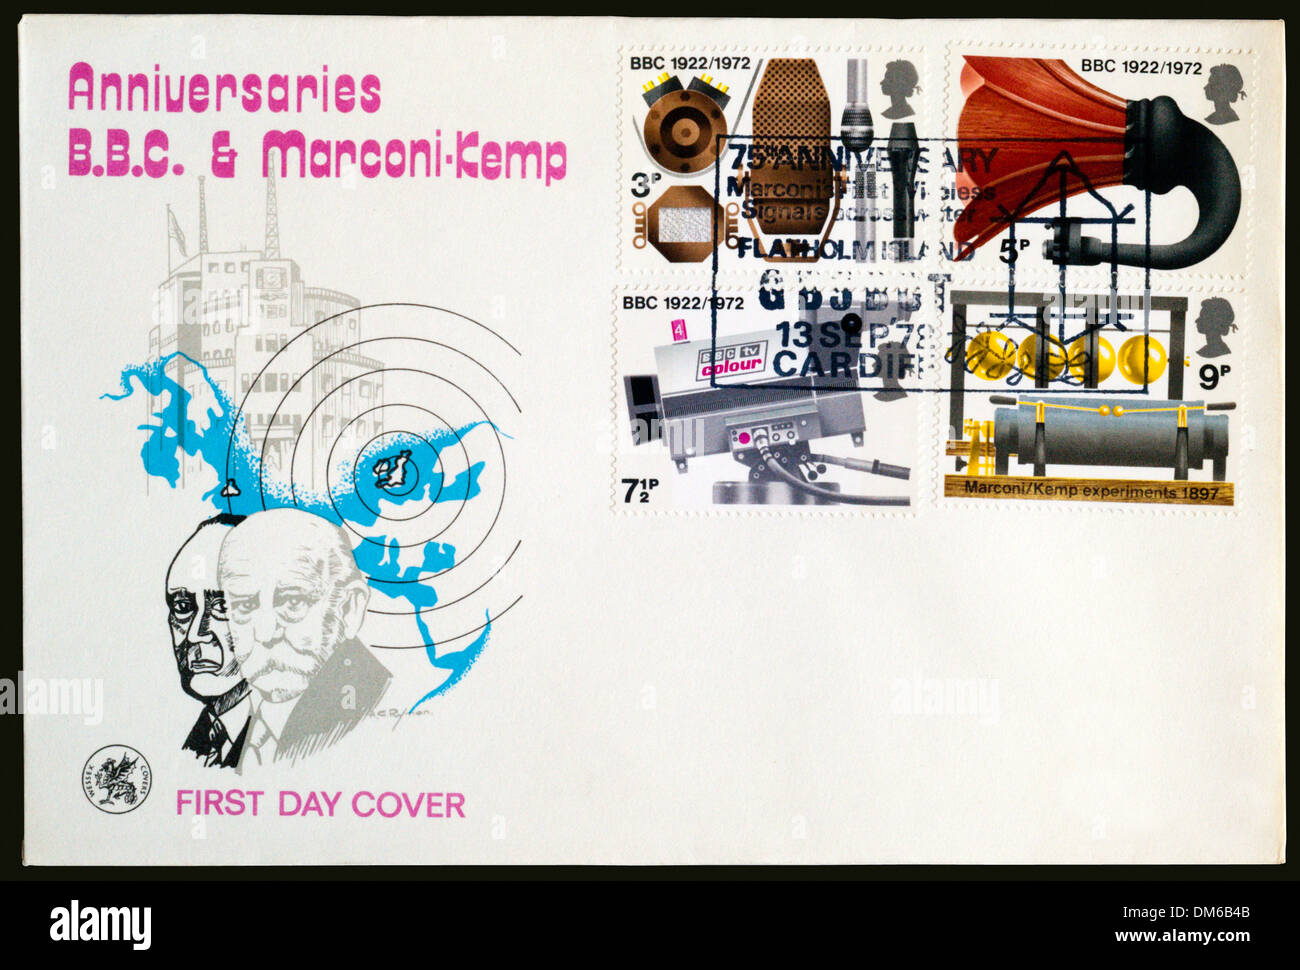 1972 erste Tag decken Sie zur Erinnerung an Jahrestage von BBC und Marconi-Kemp, Poststempel auf Flatholm Island. Stockfoto